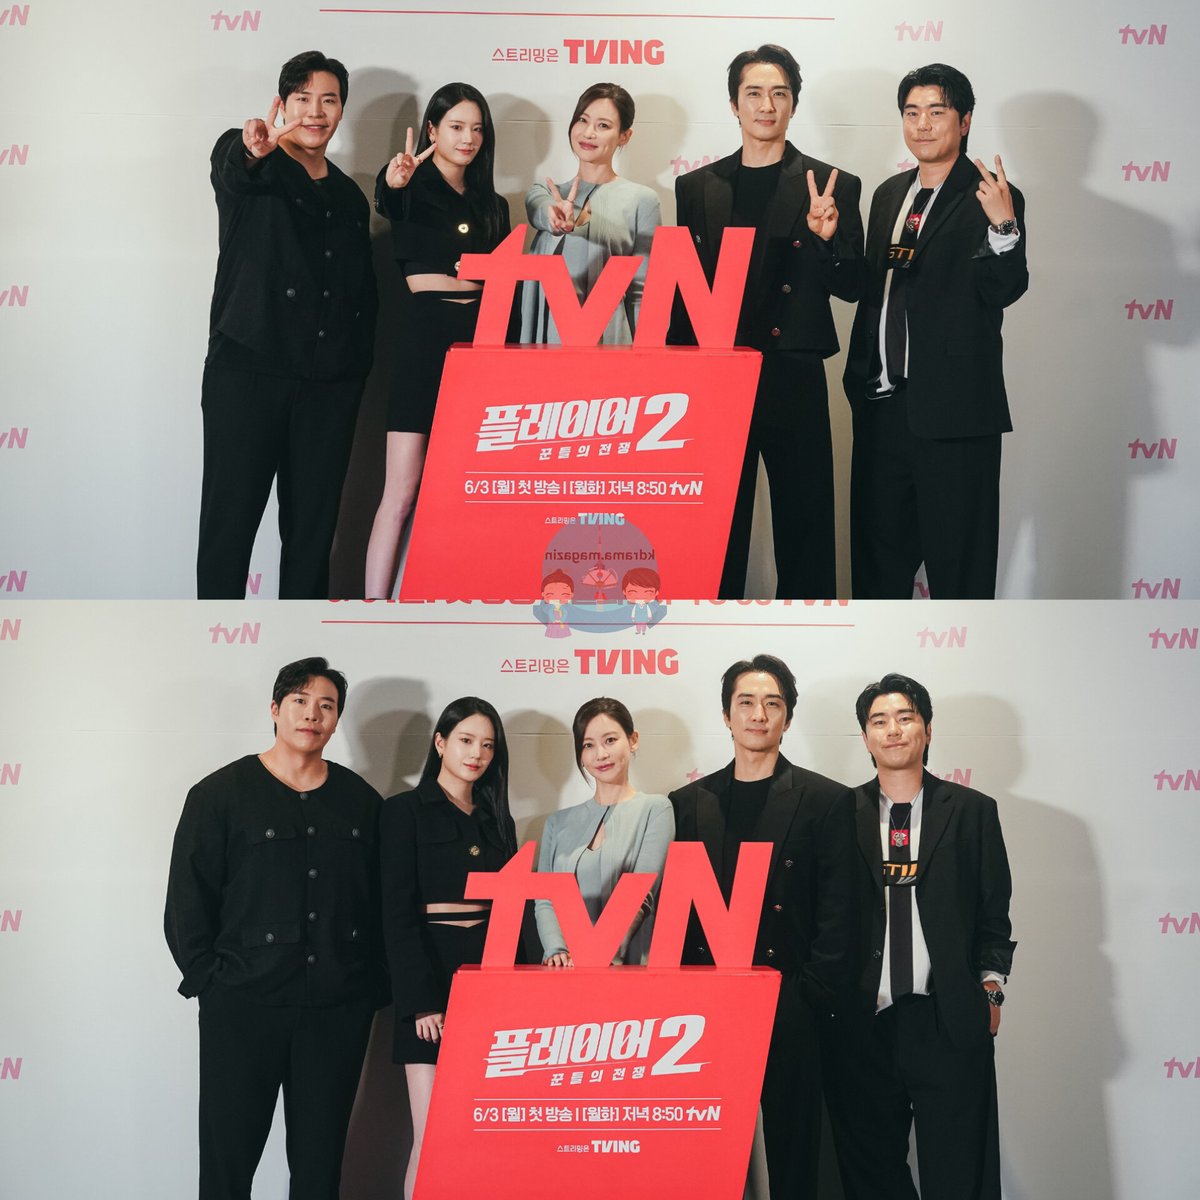 tvN Draması #ThePlayer2_MasterofSwindlers İçin Basın Toplantısı Düzenlendi. 

🗓3 Haziran'da yayınlanacak. 

#SongSeungHeon #OhYeonSeo #LeeSiEon #JangGyuRi #TaeWonSeok #HaDoKwon #LeeJoonHyuk #Player2 #플레이어2_꾼들의전쟁 #ThePlayer2

👉 #kdramamagazinbasıntoplantıları